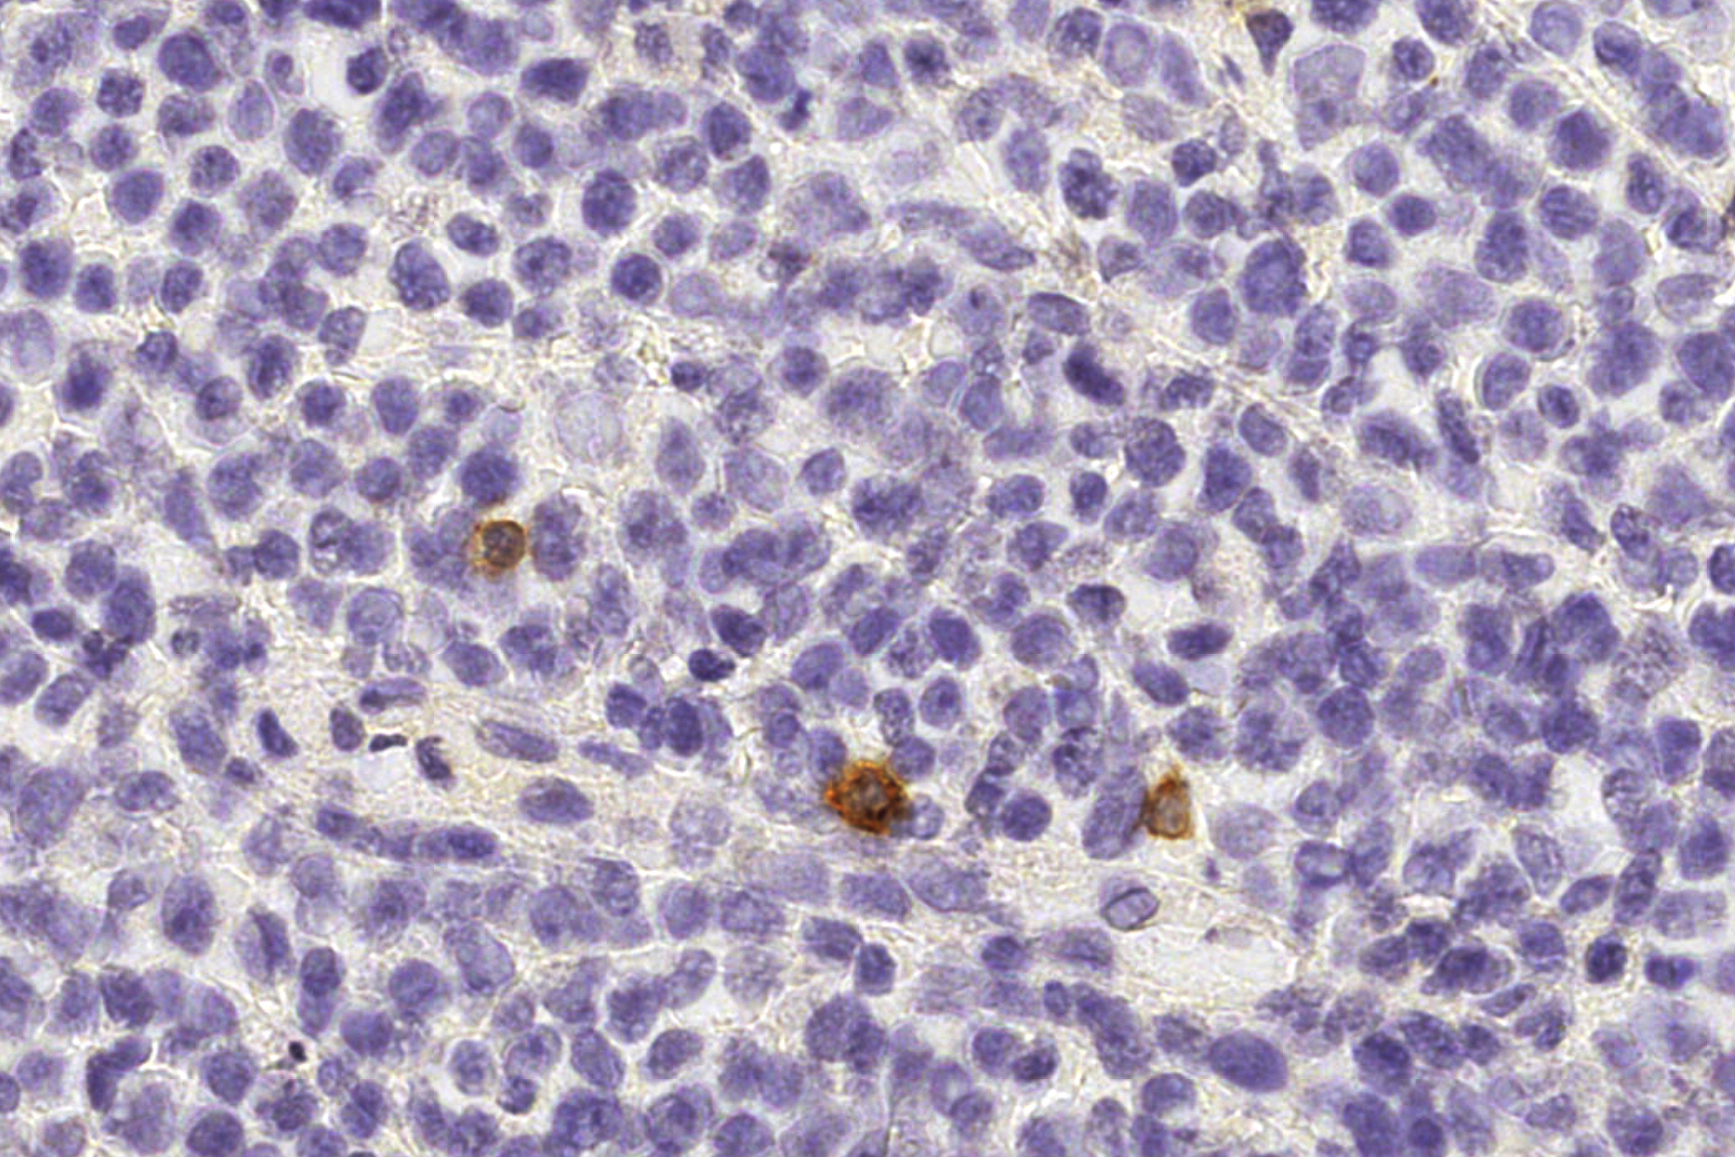 NK-Zellen (braun) patrouillieren zwischen Zellen eines gesunden menschlichen Lymphknotens.